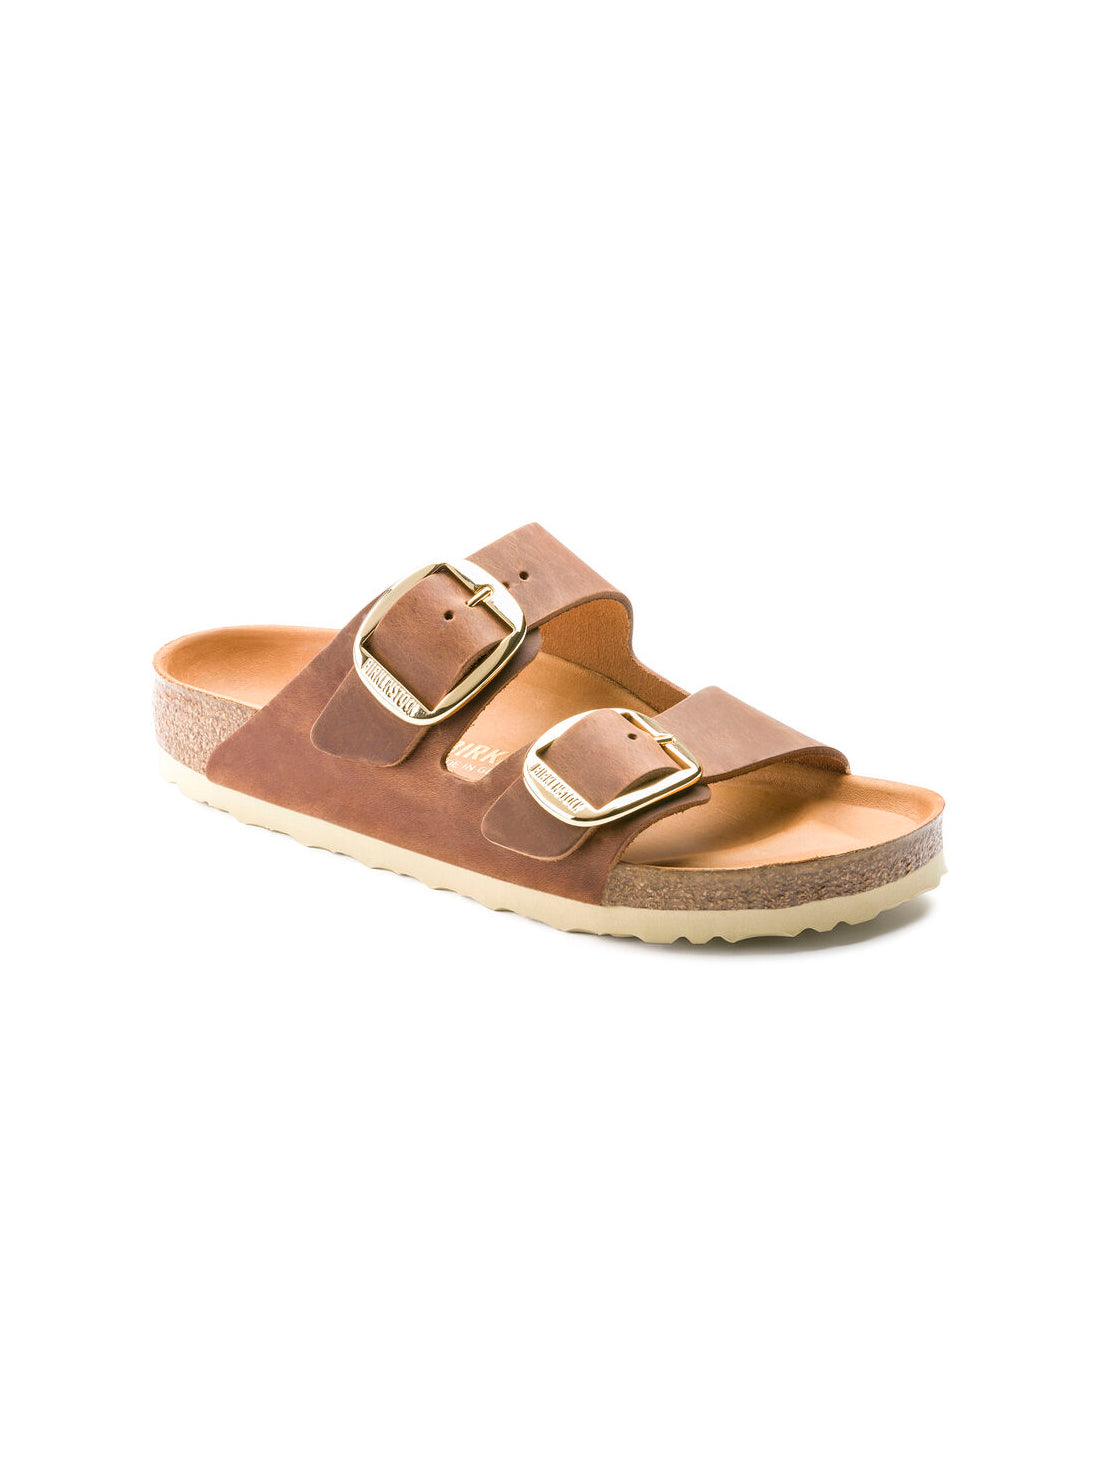 birkenstock arizona big buckle sandals in oiled leather cognac regular